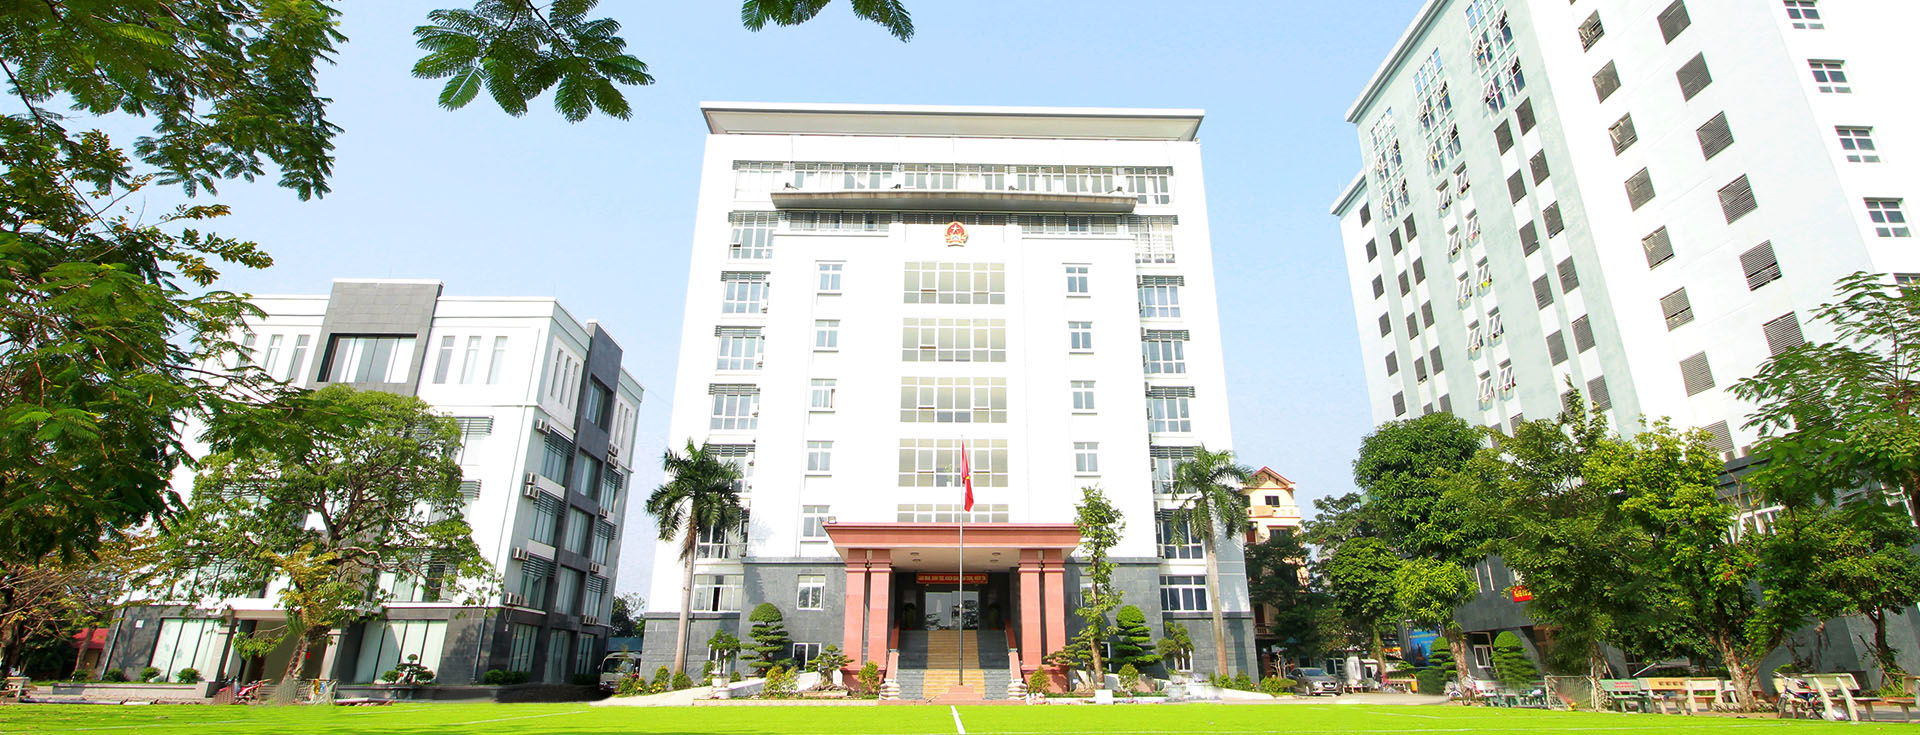 Trường Đại học Kiểm sát Hà Nội | Hanoi Procuratorate University